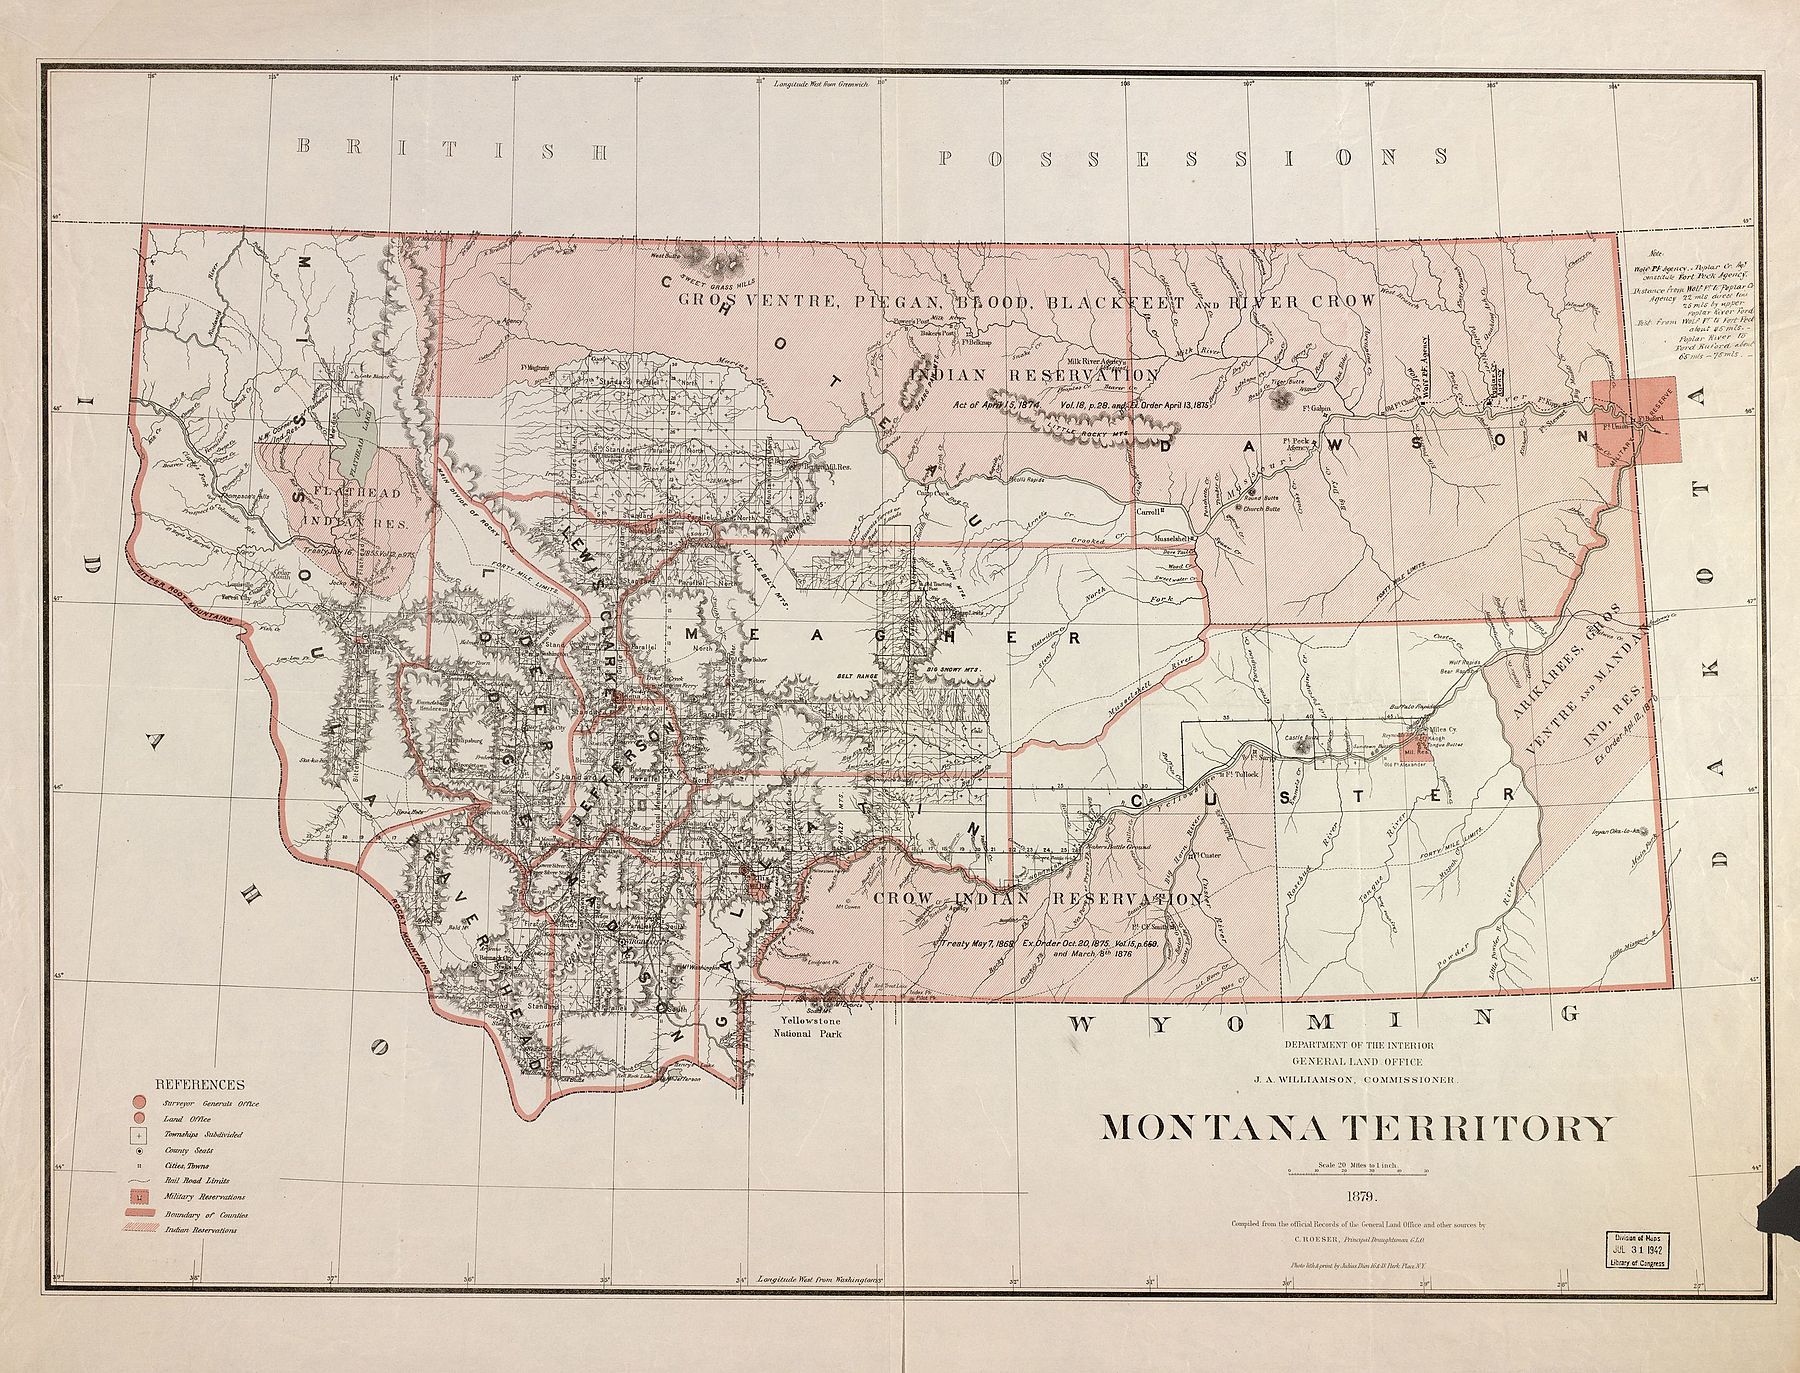 Вуд-младший служил в Вулф-Пойнт и Поплар-Крик на северо-востоке территории Монтана с 1880 по 1889 год. В 1878 году Индейское агентство Форт-Пек было перемещено из того места, которое показано на карте, в его нынешнее местоположение в Попларе, потому что первоначальное агентство был расположен в пойме, каждую весну страдая от наводнений в верховьях реки Миссури.